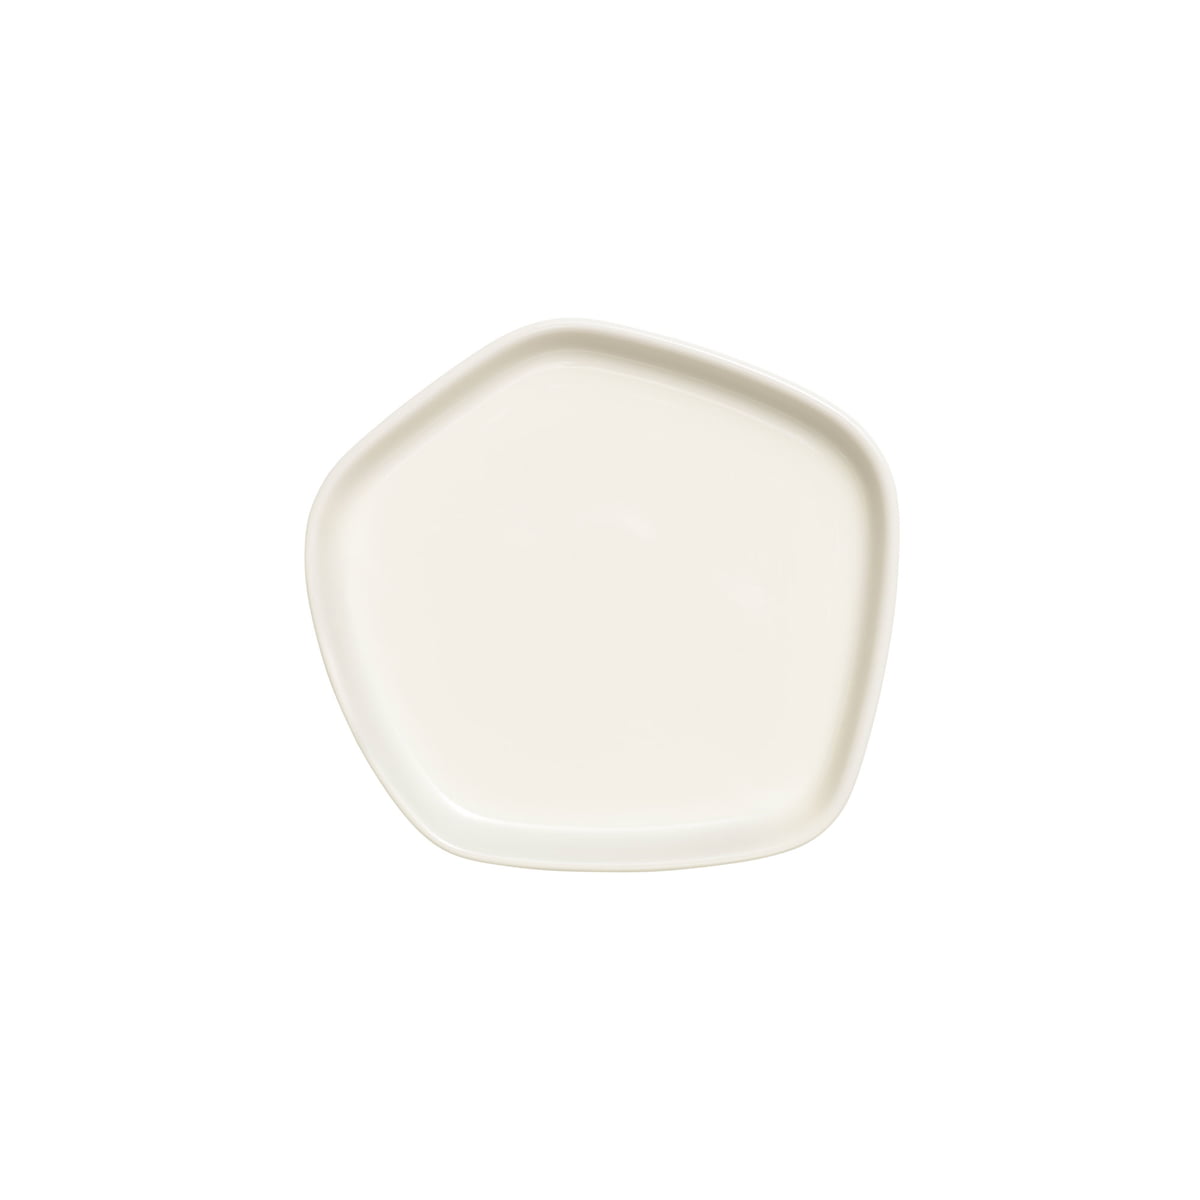 Iittala X Issey Miyake - Teller 11x11 cm, weiß